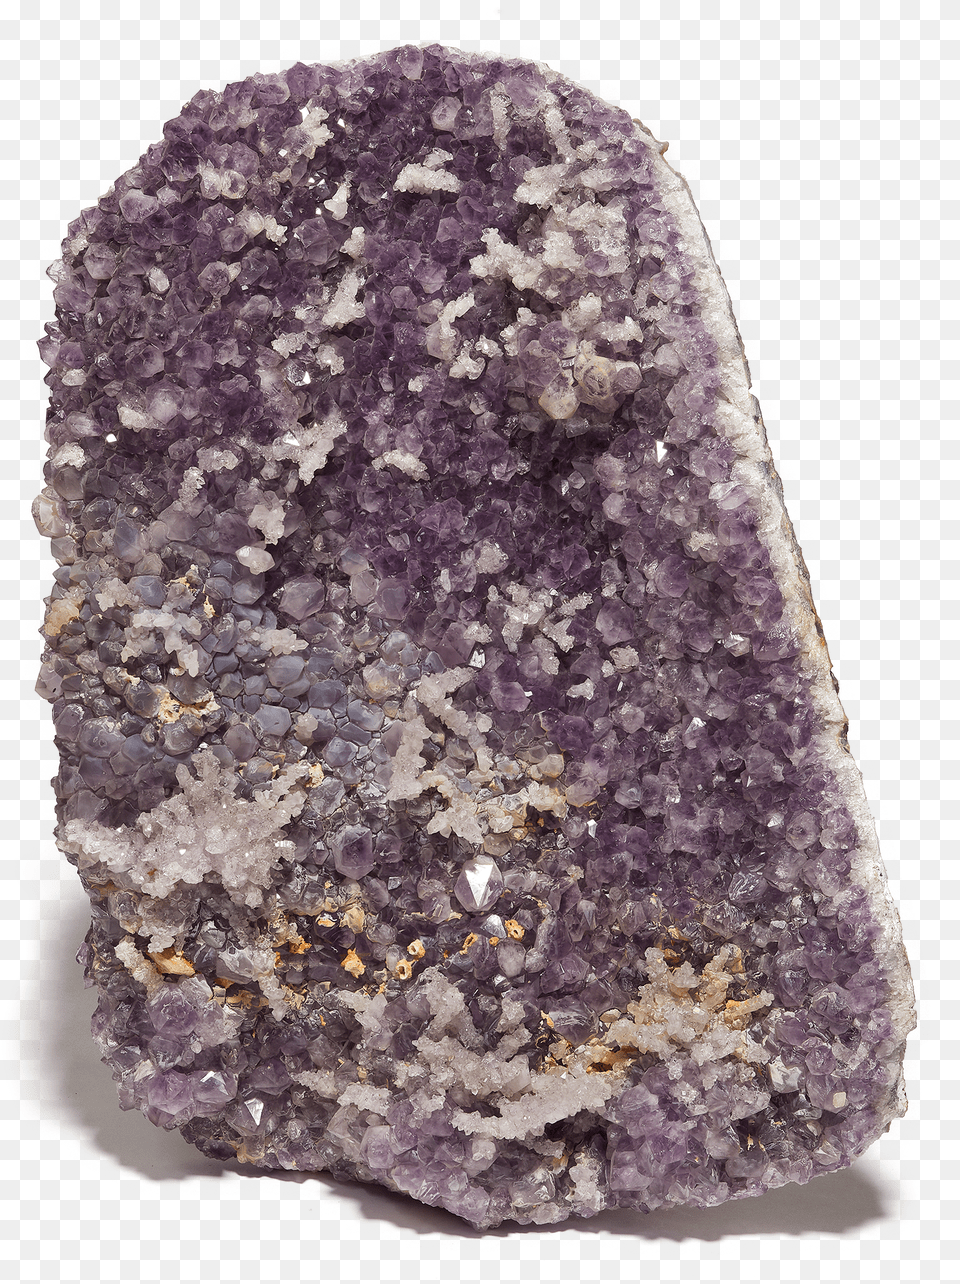 Amethyst Geode Cordierite Png Image